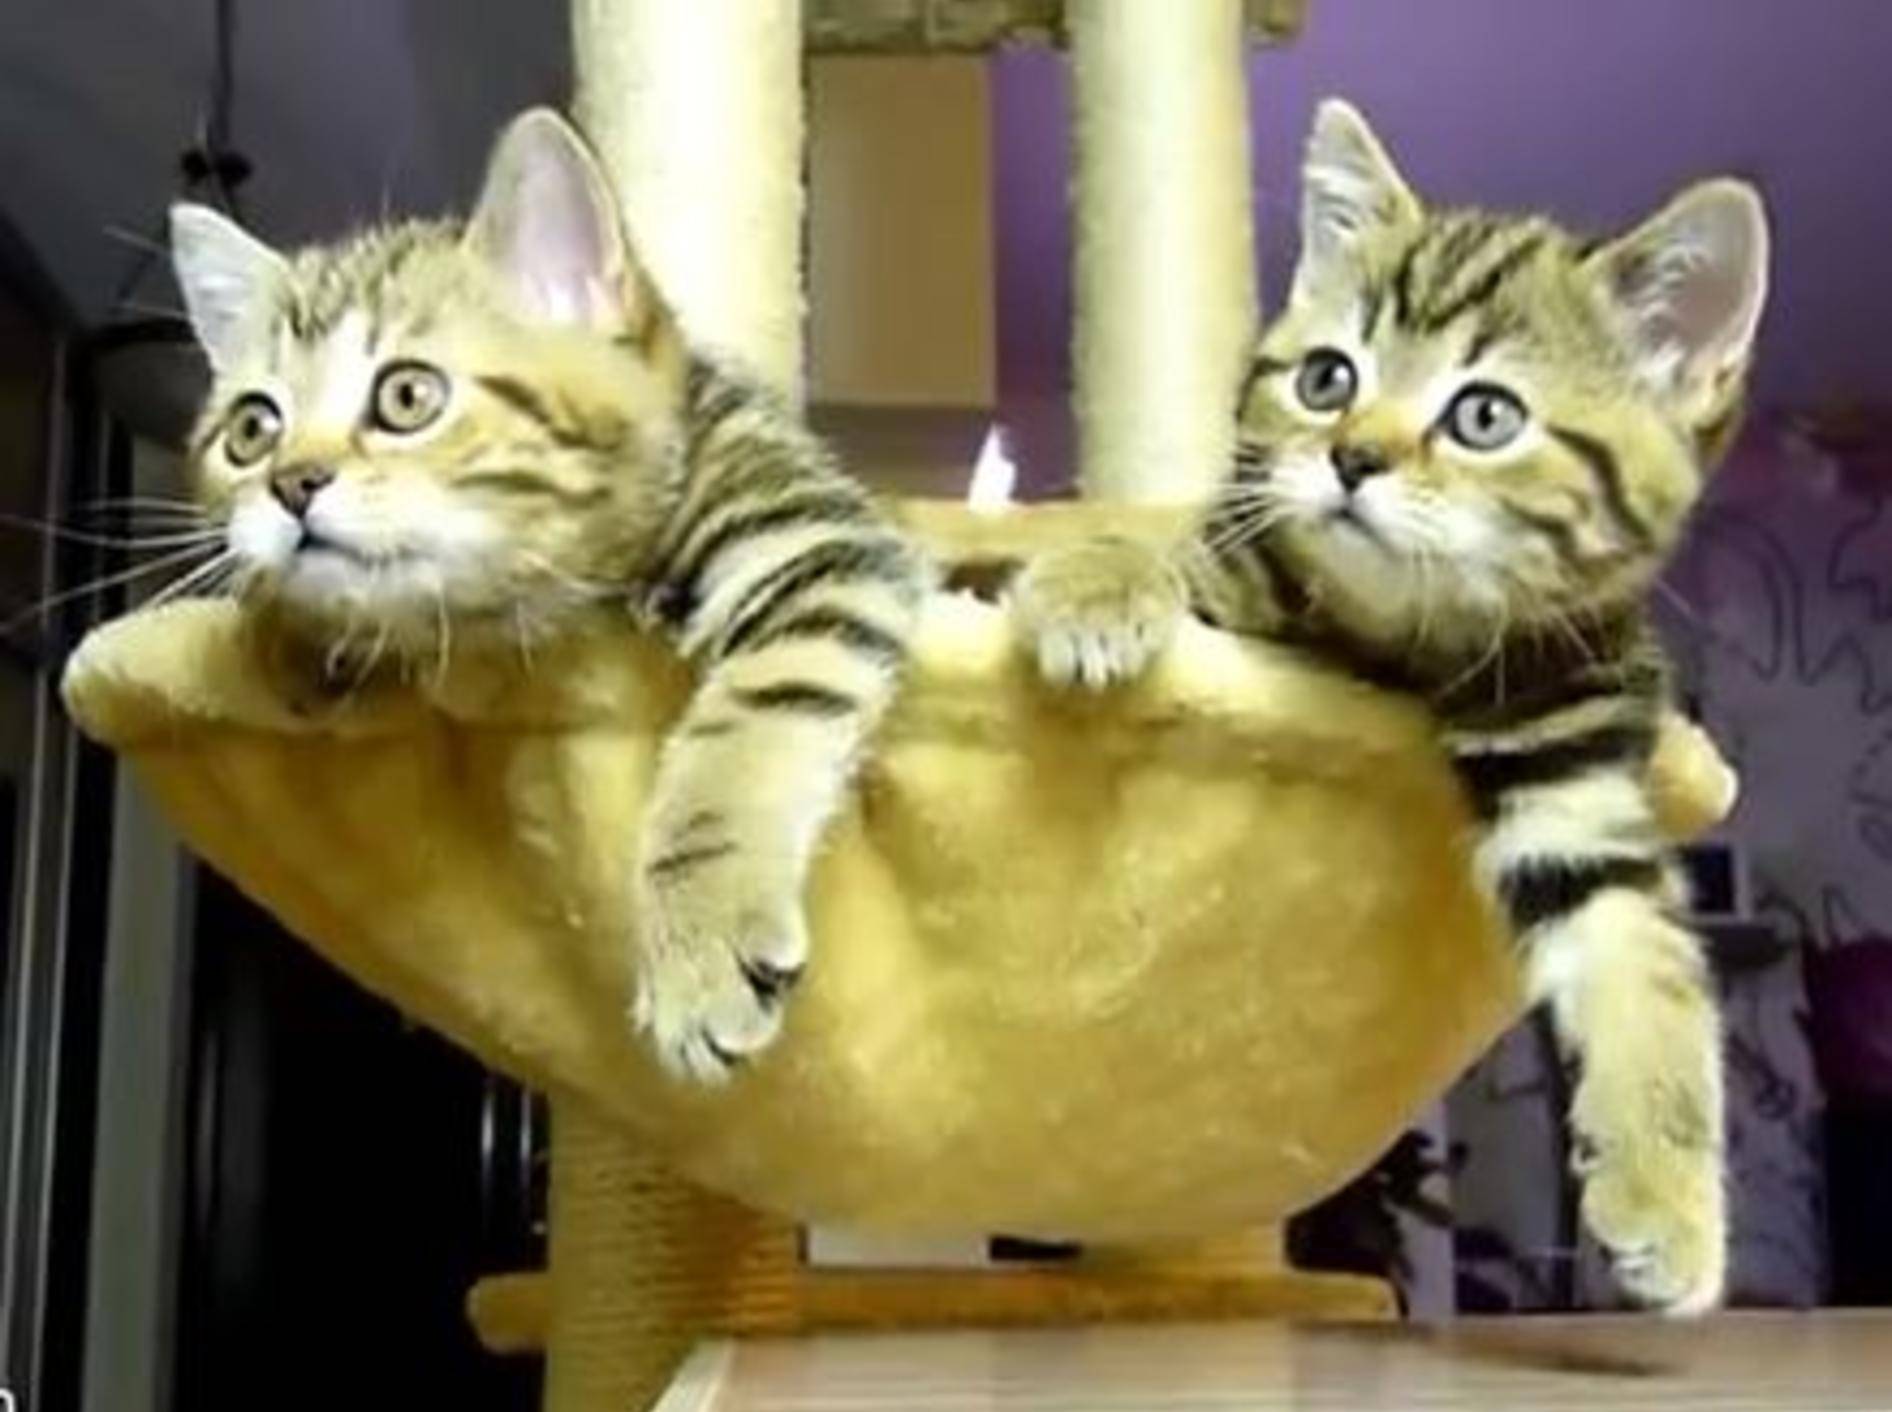 Lustige kleine Katzen gucken Tennis im Fernsehen — Bild: Youtube / Funnycatsandnicefish